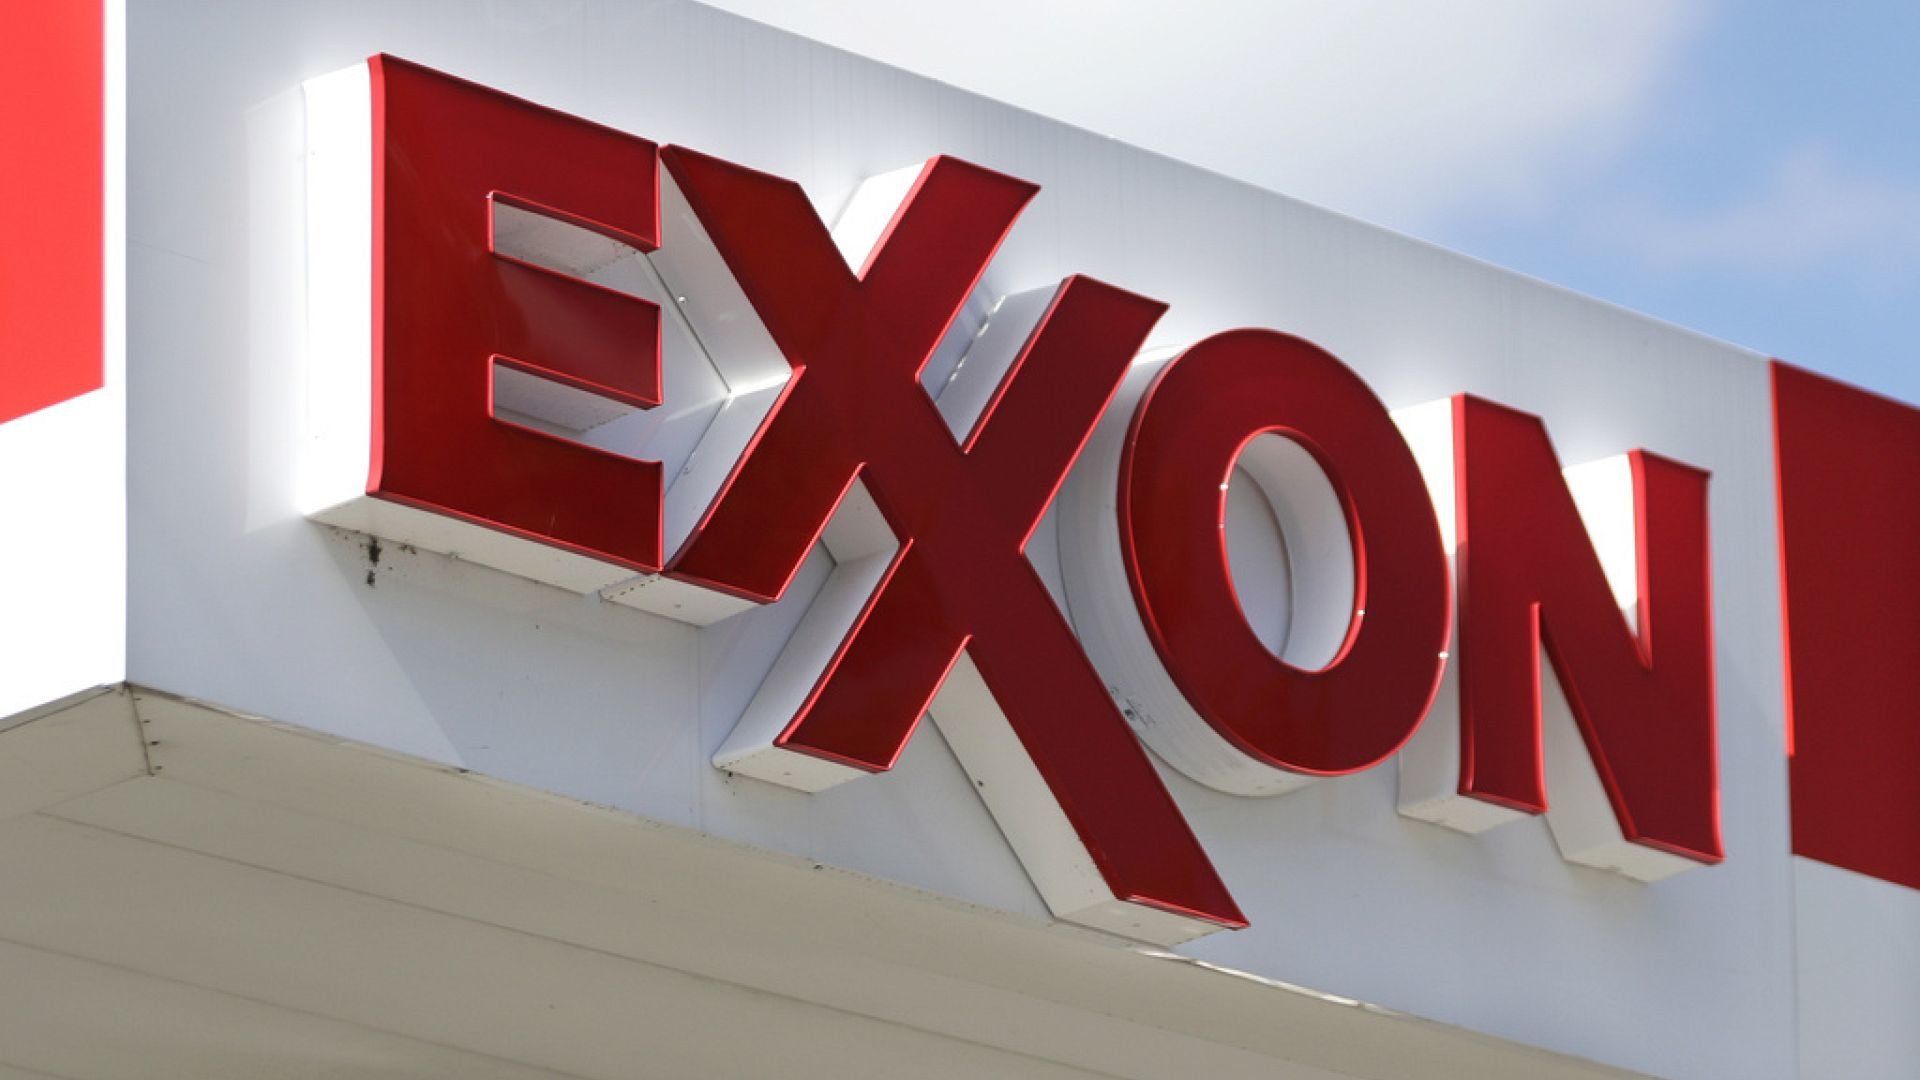 Турция стремится к диверсификации энергетики с ExxonMobil: сделка на $1,1 млрд СПГ на фоне улучшения отношений между США и Турцией и уязвимости России